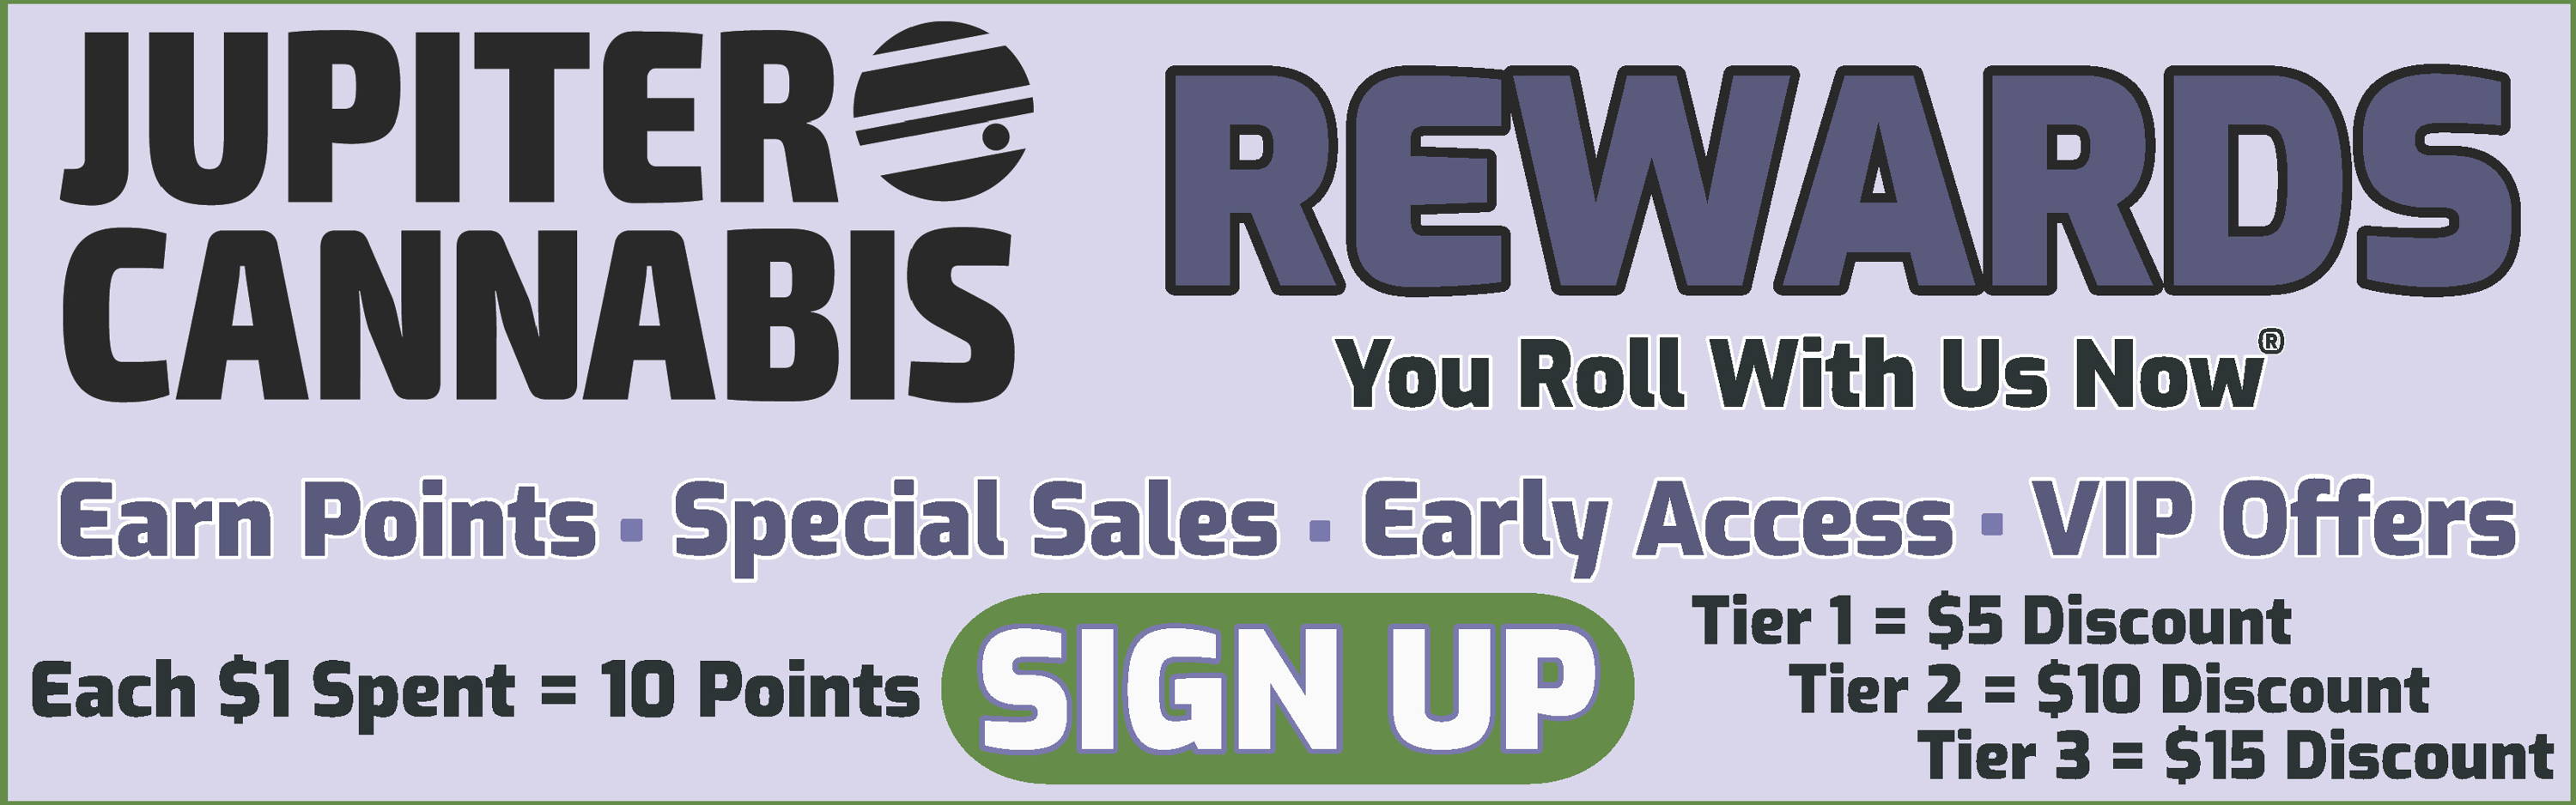 Jupiter Cannabis Rewards Program | Earn Points | Get Rewards | Sales | VIP Offers